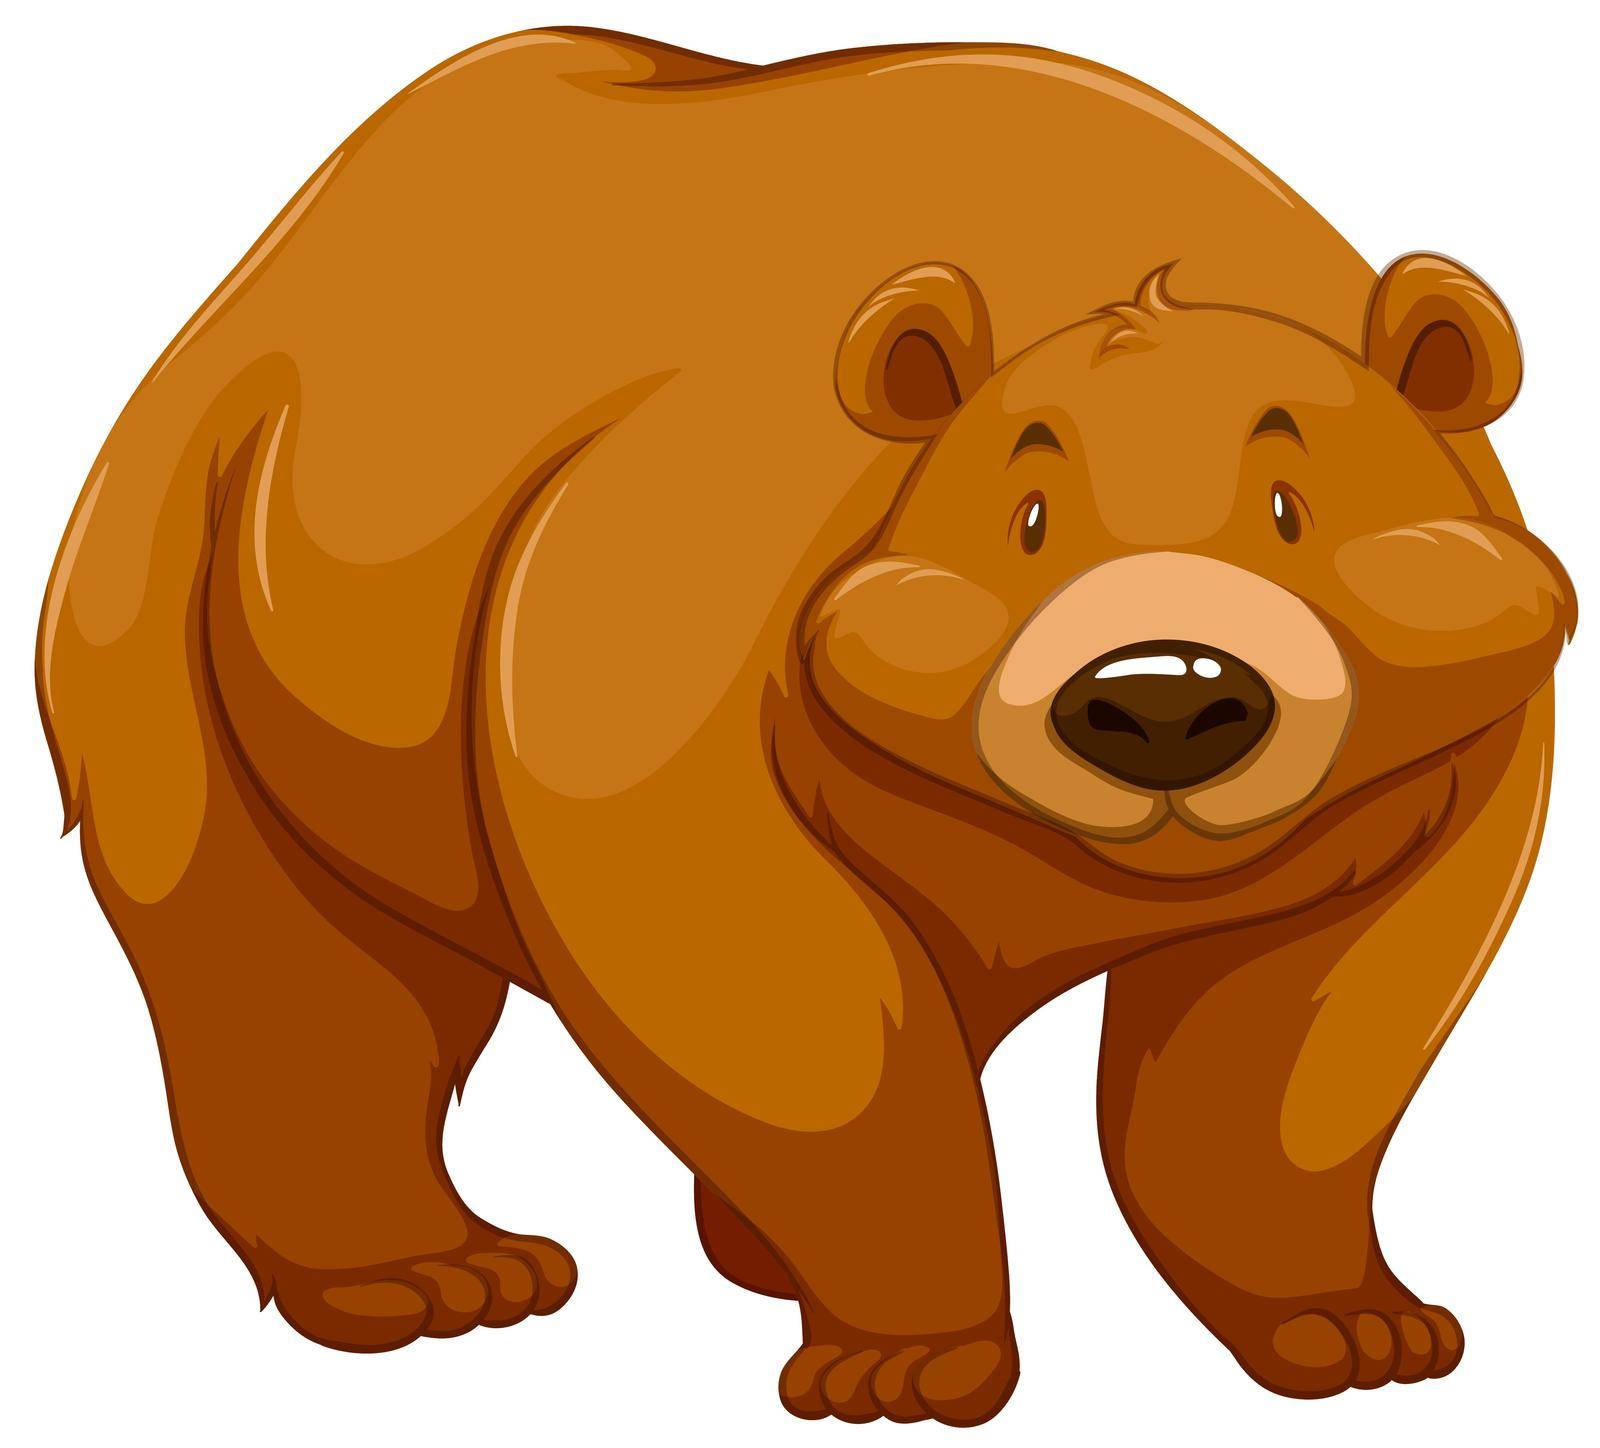 Big brown bear by iimages